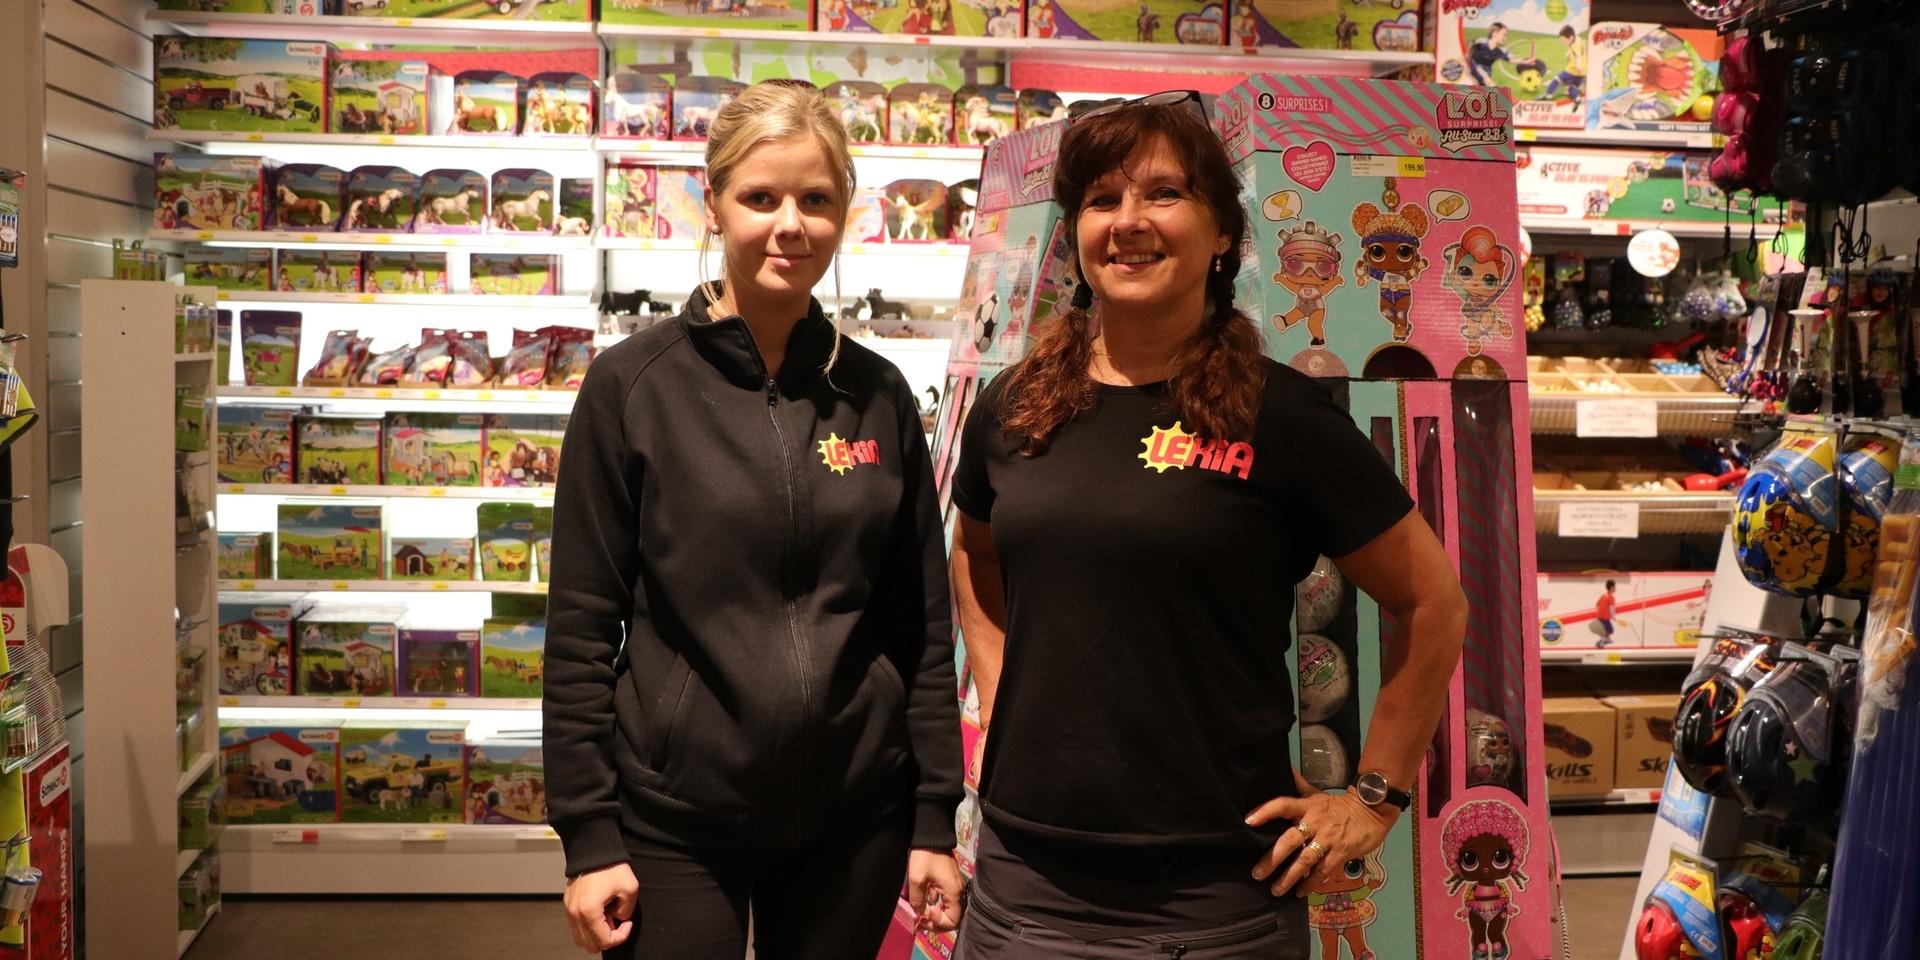 Stina Johansson och Kate Jern är beredda att se till så kunder håller avstånd även om maxtaket slopats. 